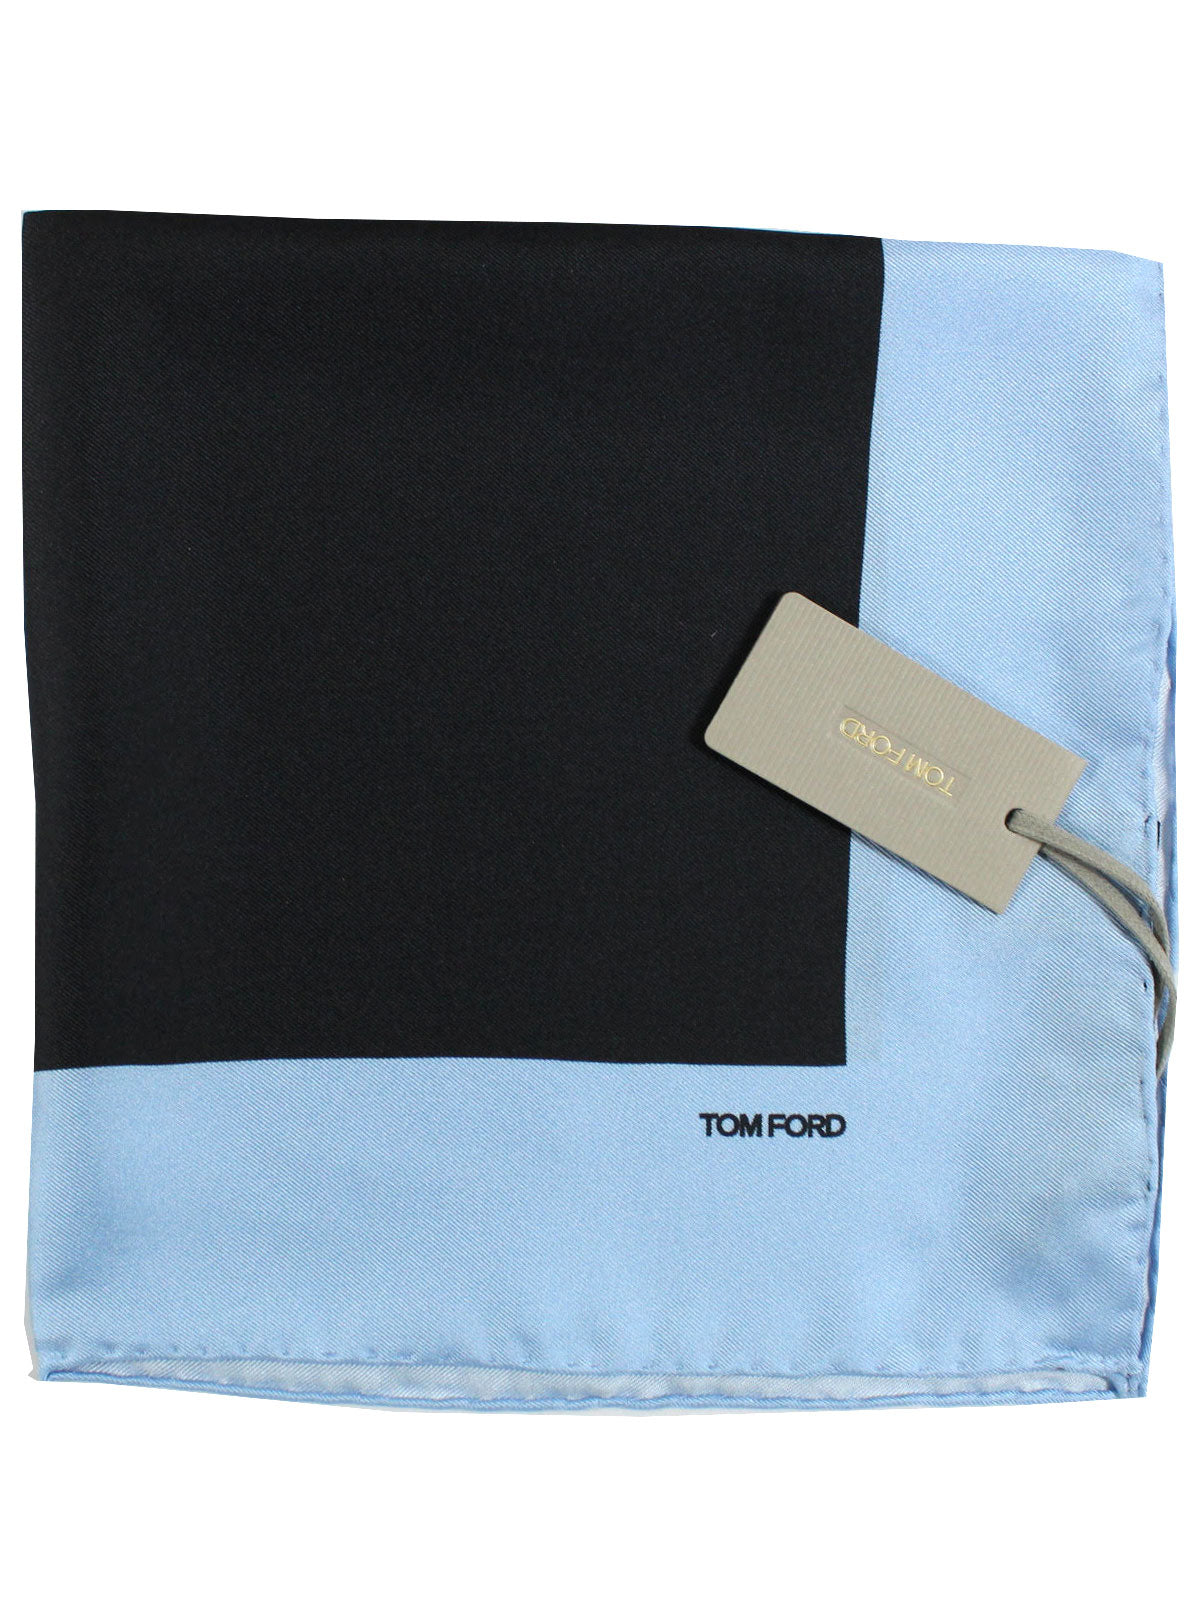 Tom Ford Pocket Square Blue Solid